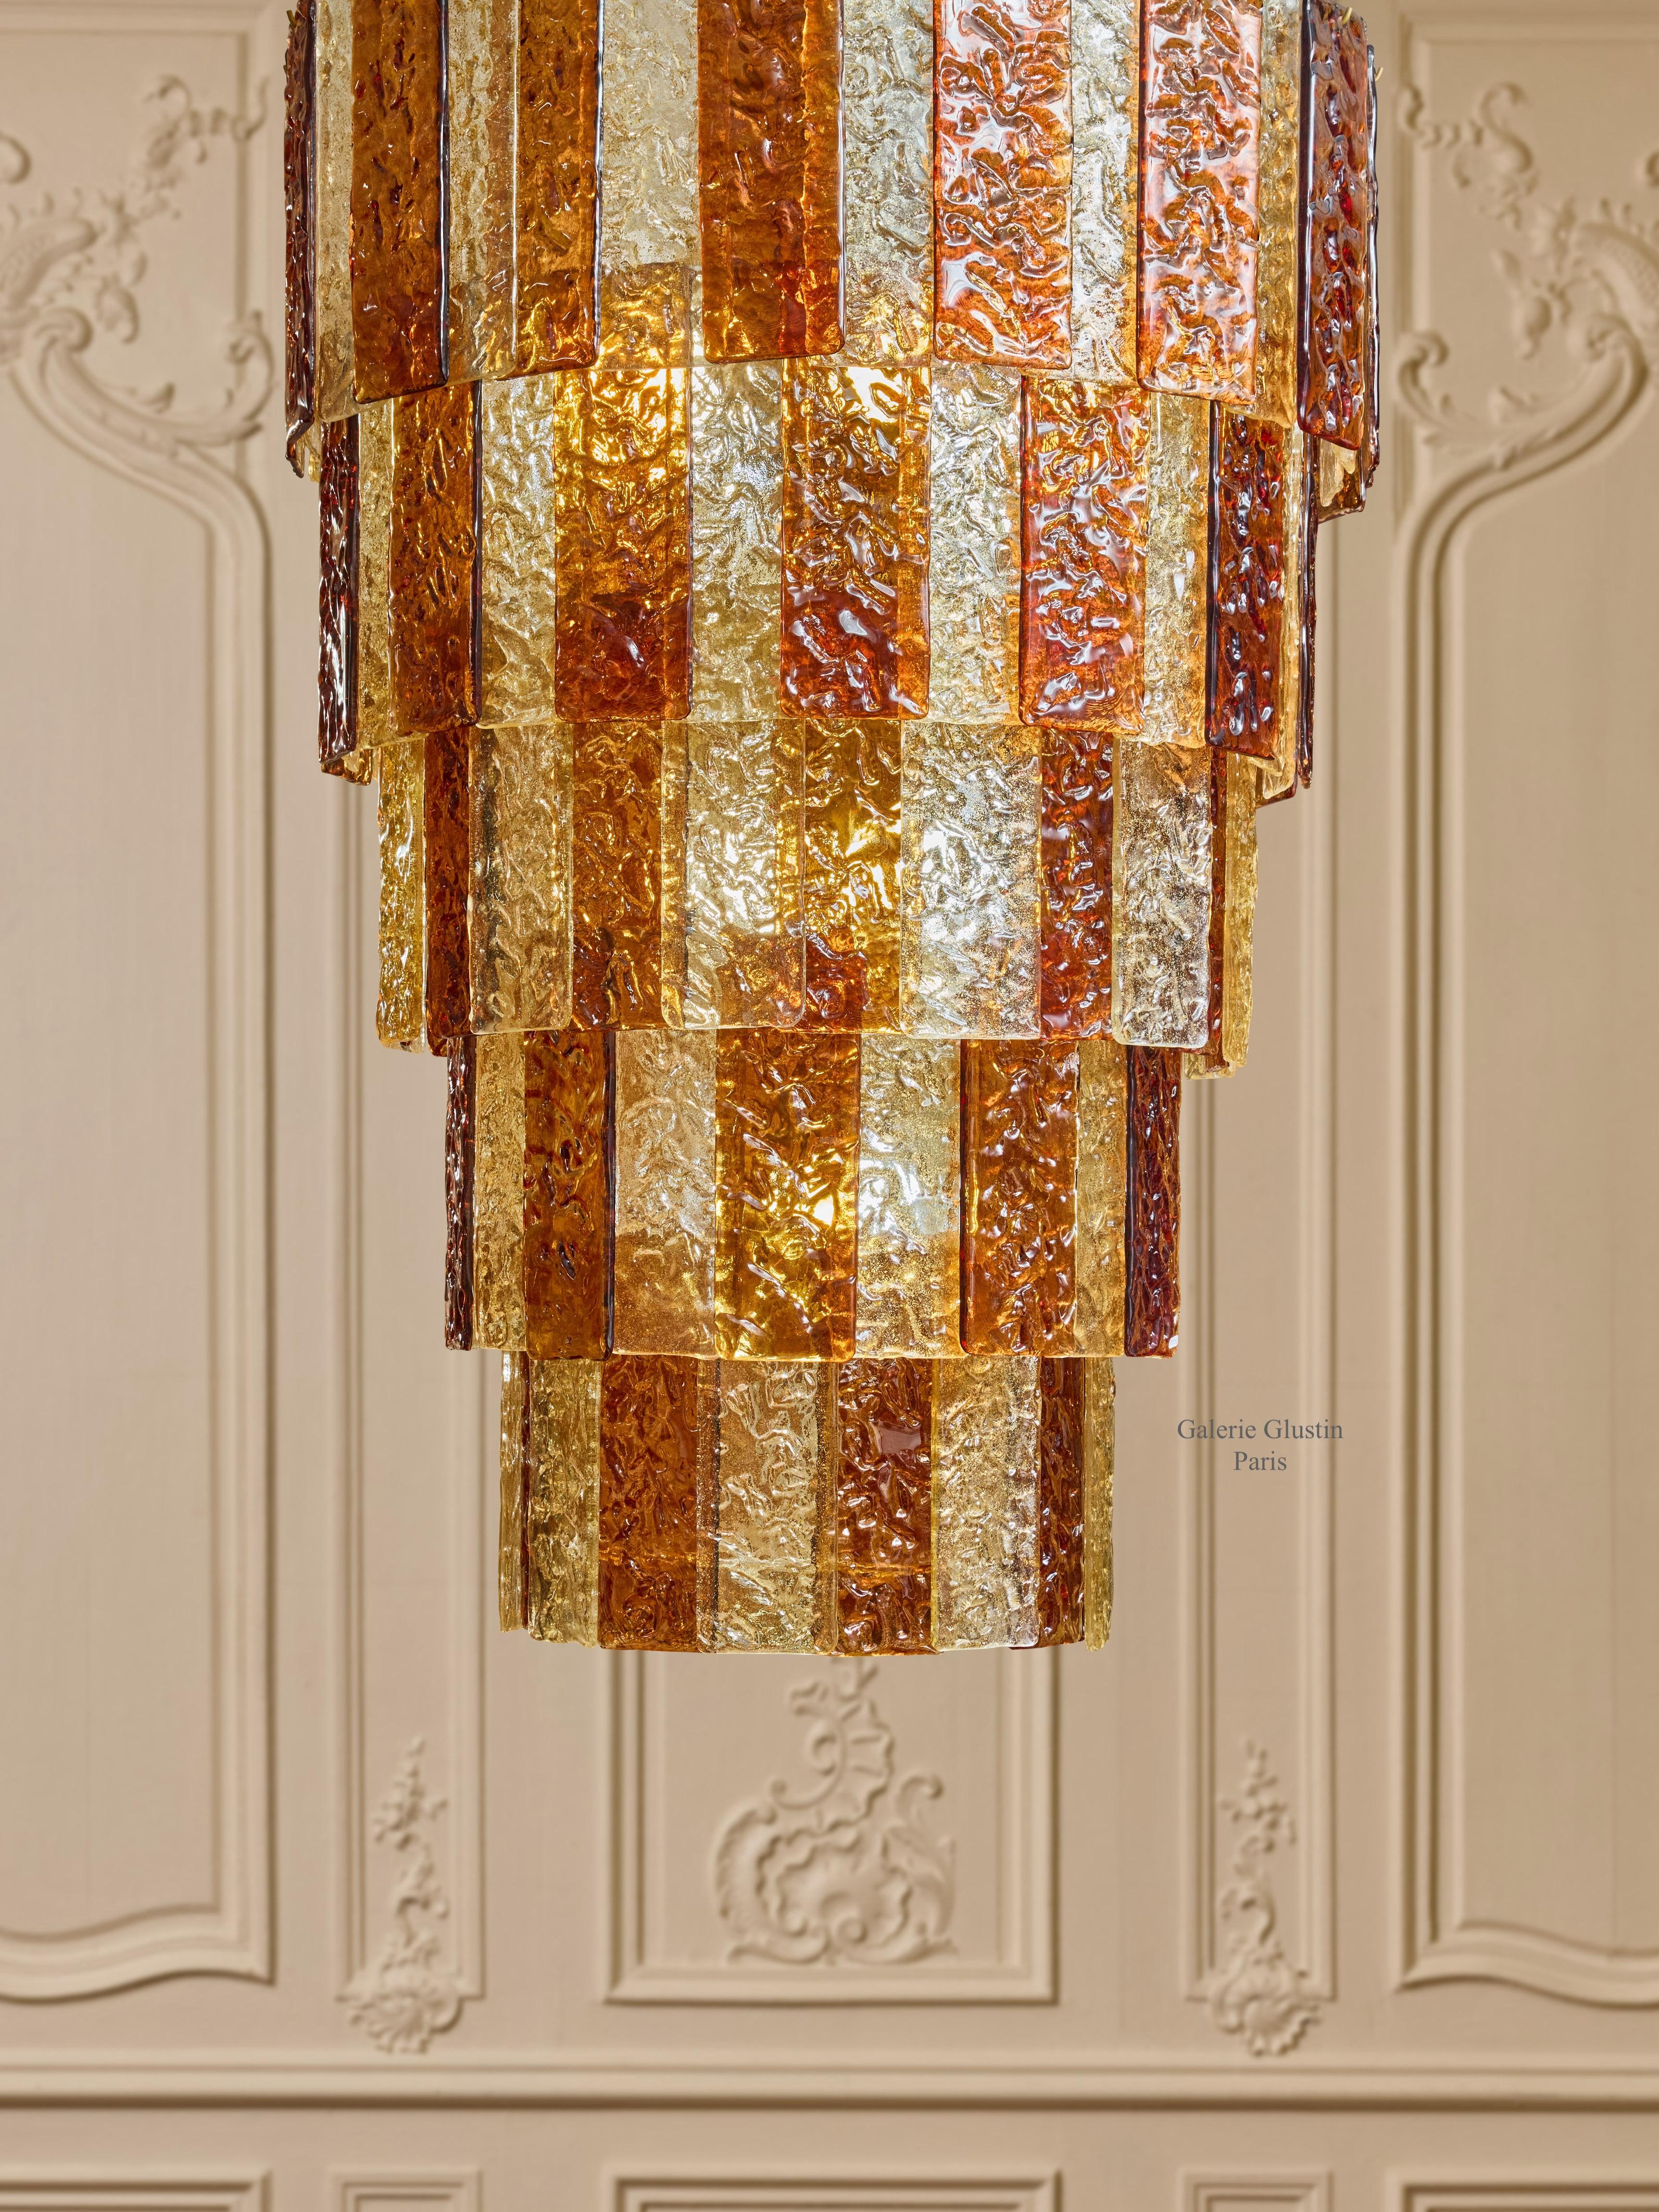 Kronleuchter aus Messing mit geschliffenen Murano-Glasplatten.
Gestaltung durch das Studio Glustin.
Italien, 2024.